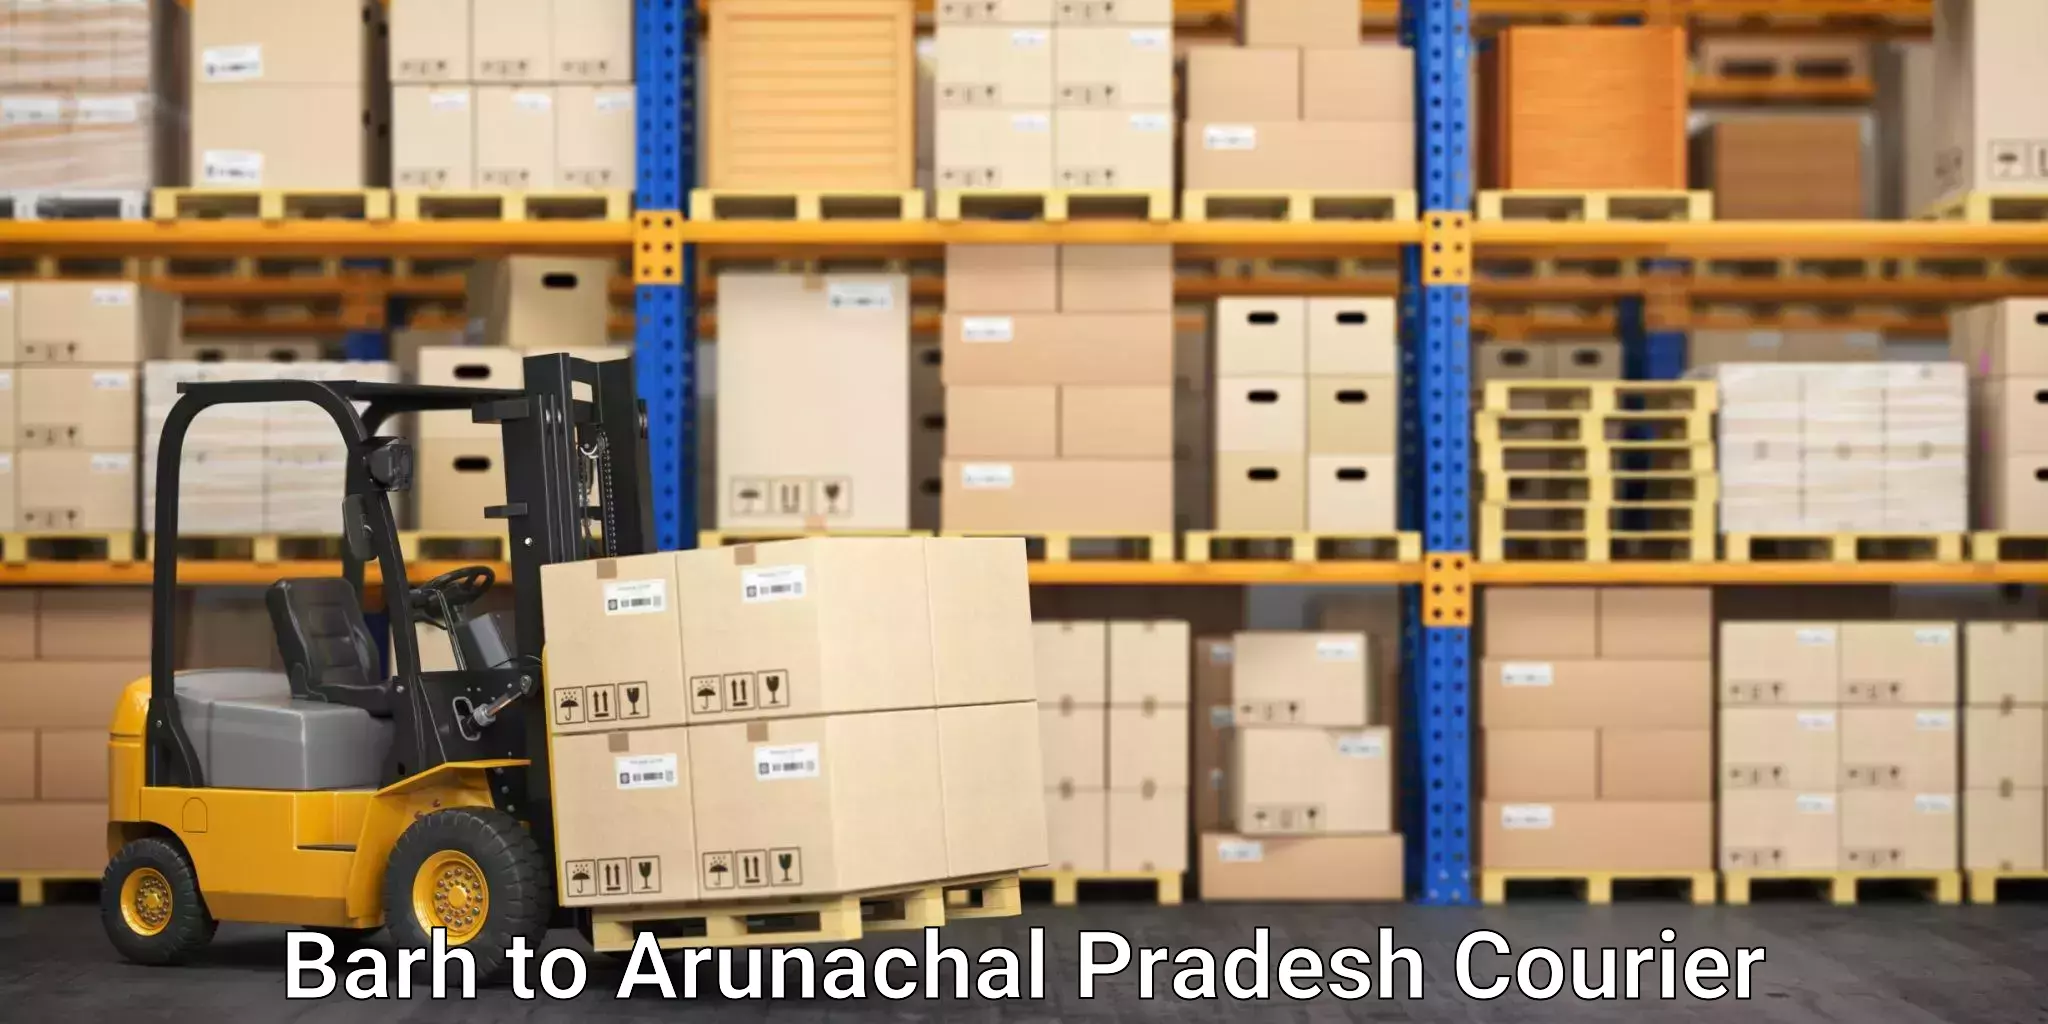 Efficient relocation services Barh to Arunachal Pradesh